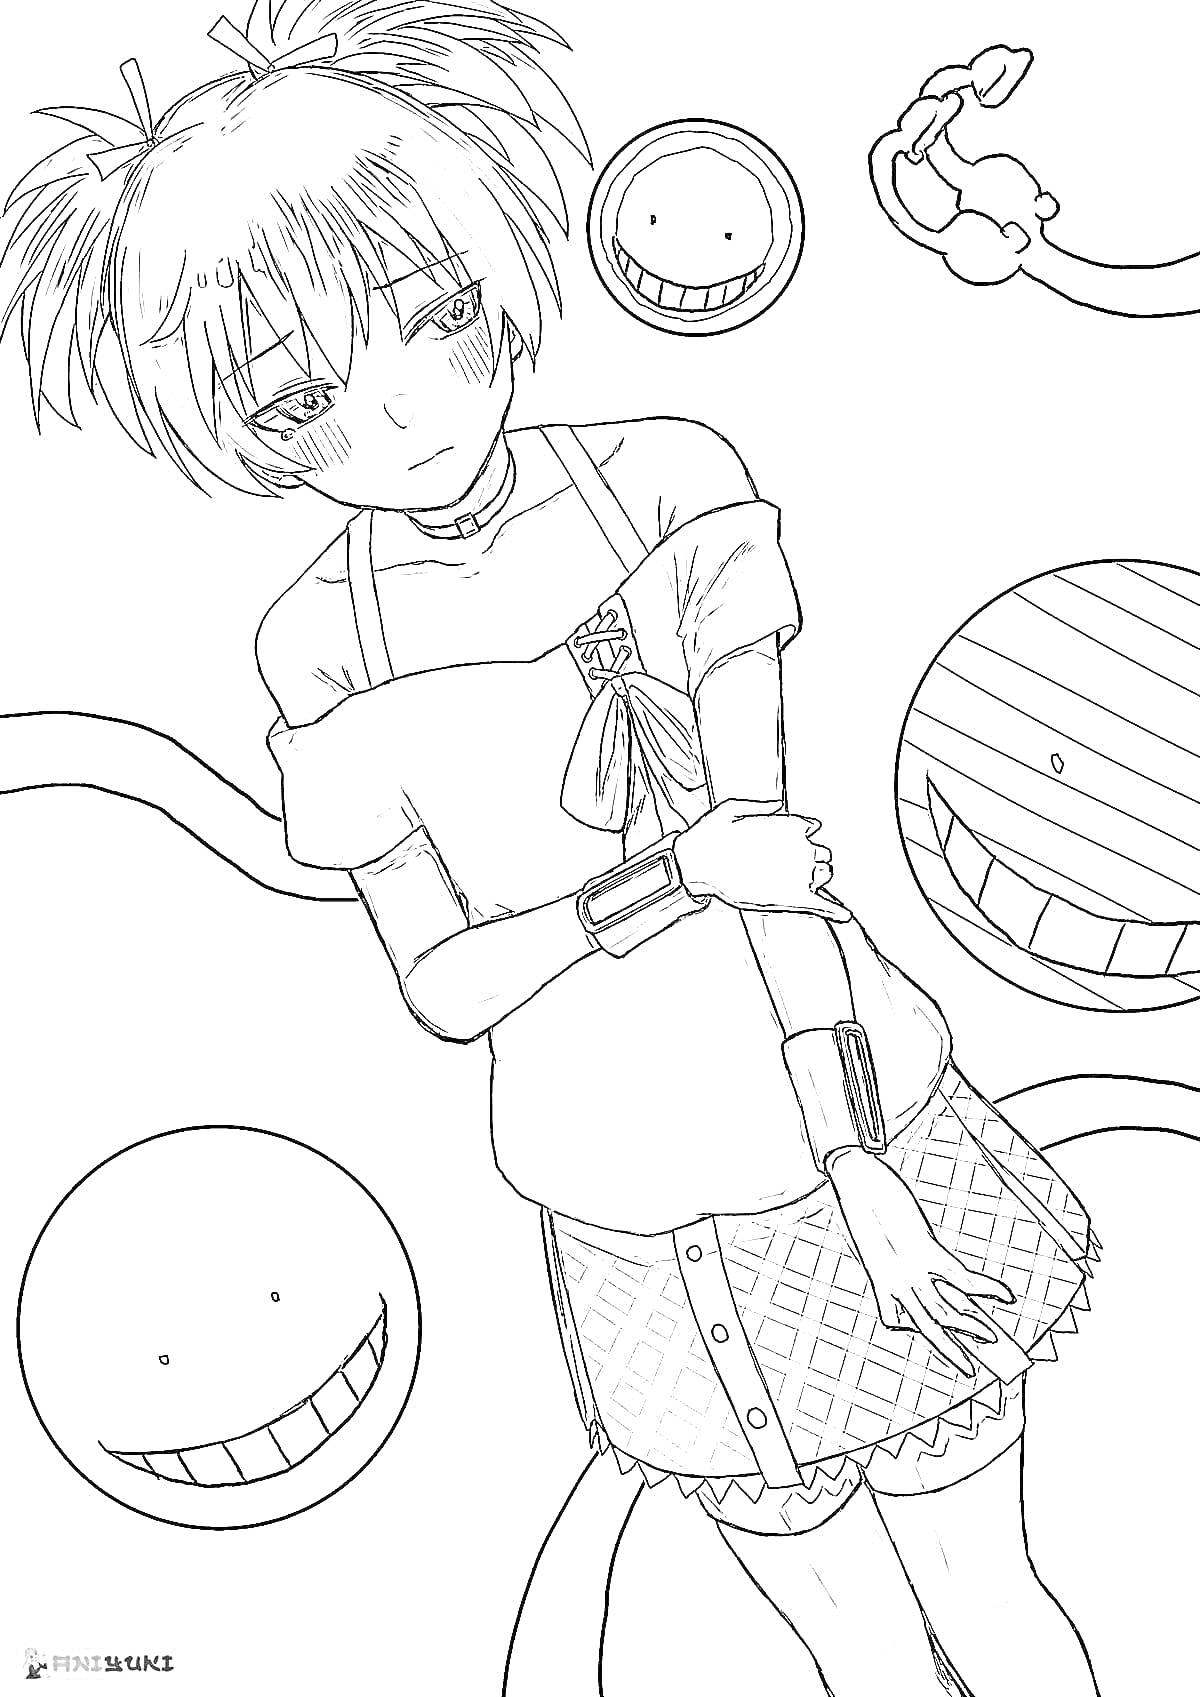 Раскраска персонаж аниме с короткими волосами в школьной одежде, улыбающиеся круги с глазами и ртом, щупальца с присосками